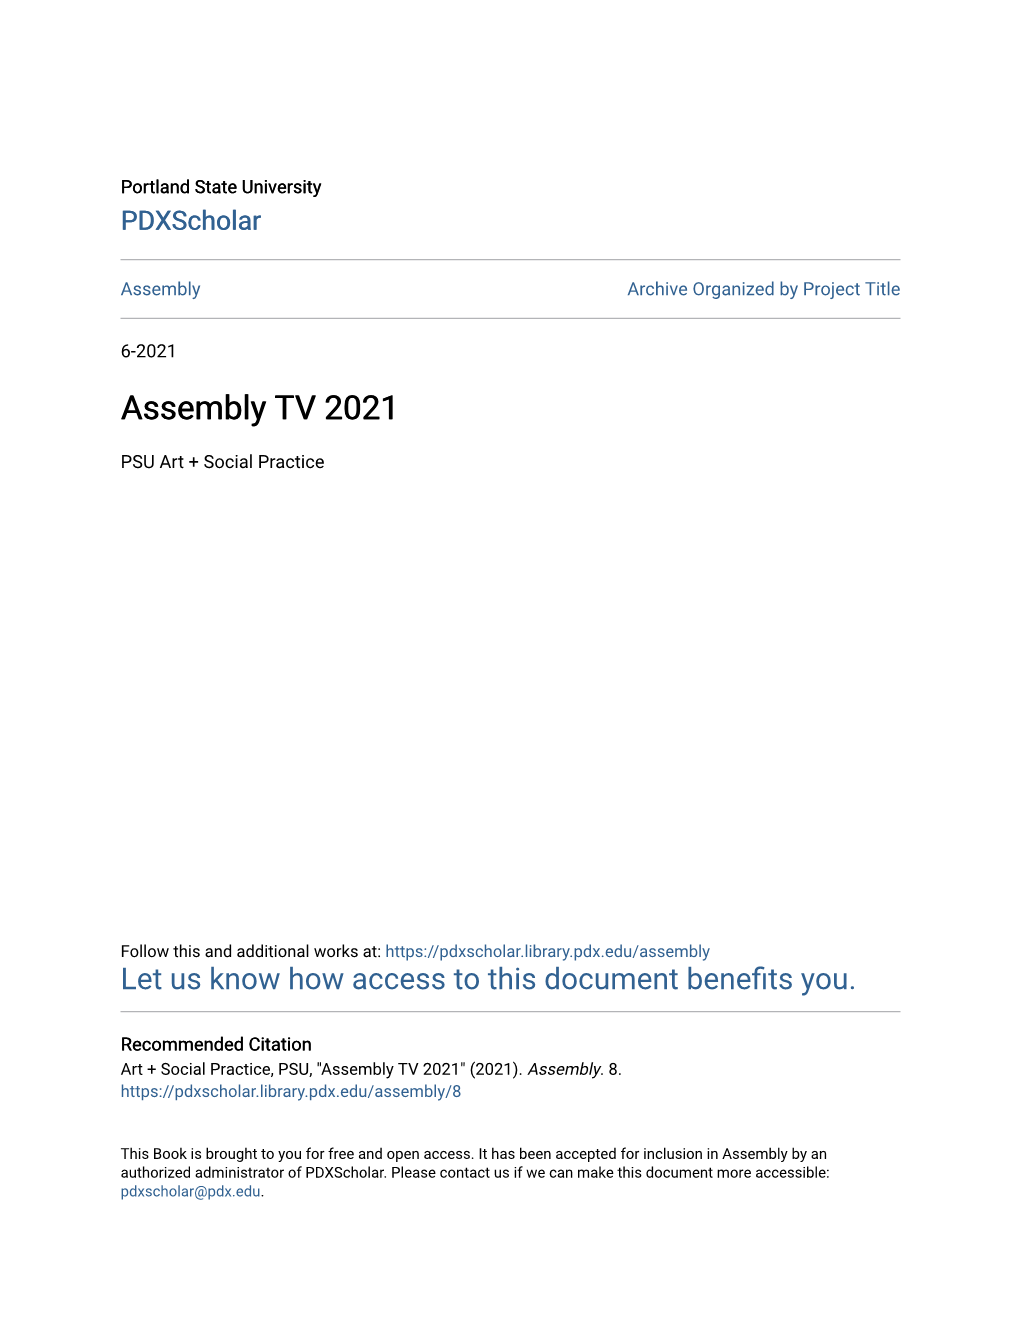 Assembly TV 2021